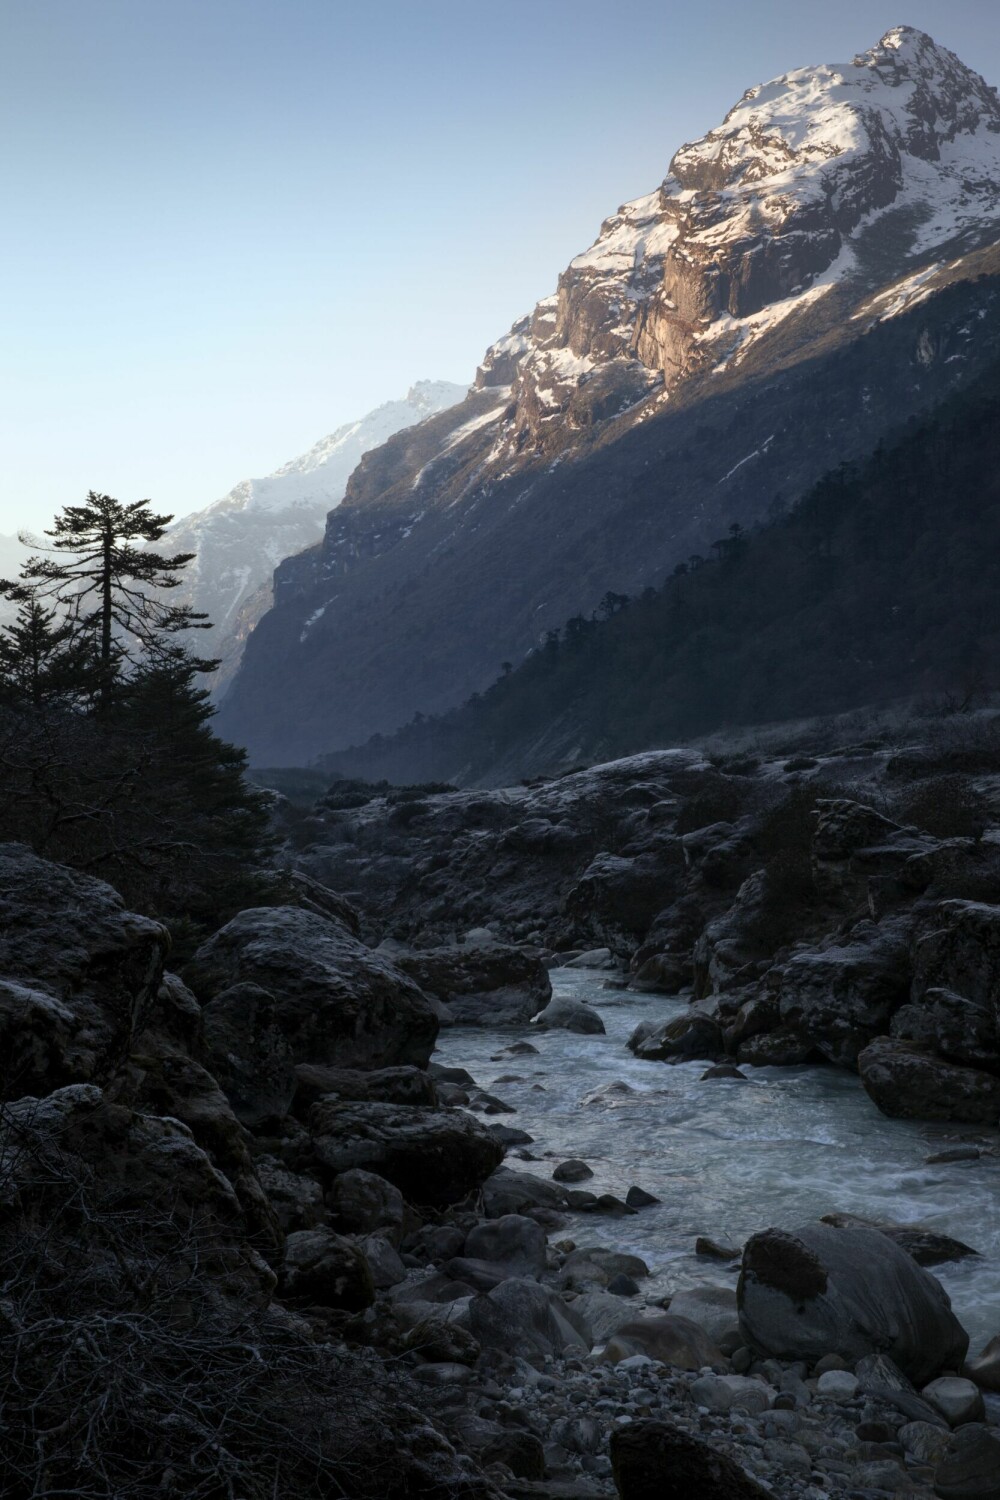 <b>YETI-LAND:</b> Dypt inne i Nepals fjellverden hviskes en rekke historier om den avskyelige snømannen – yetien.